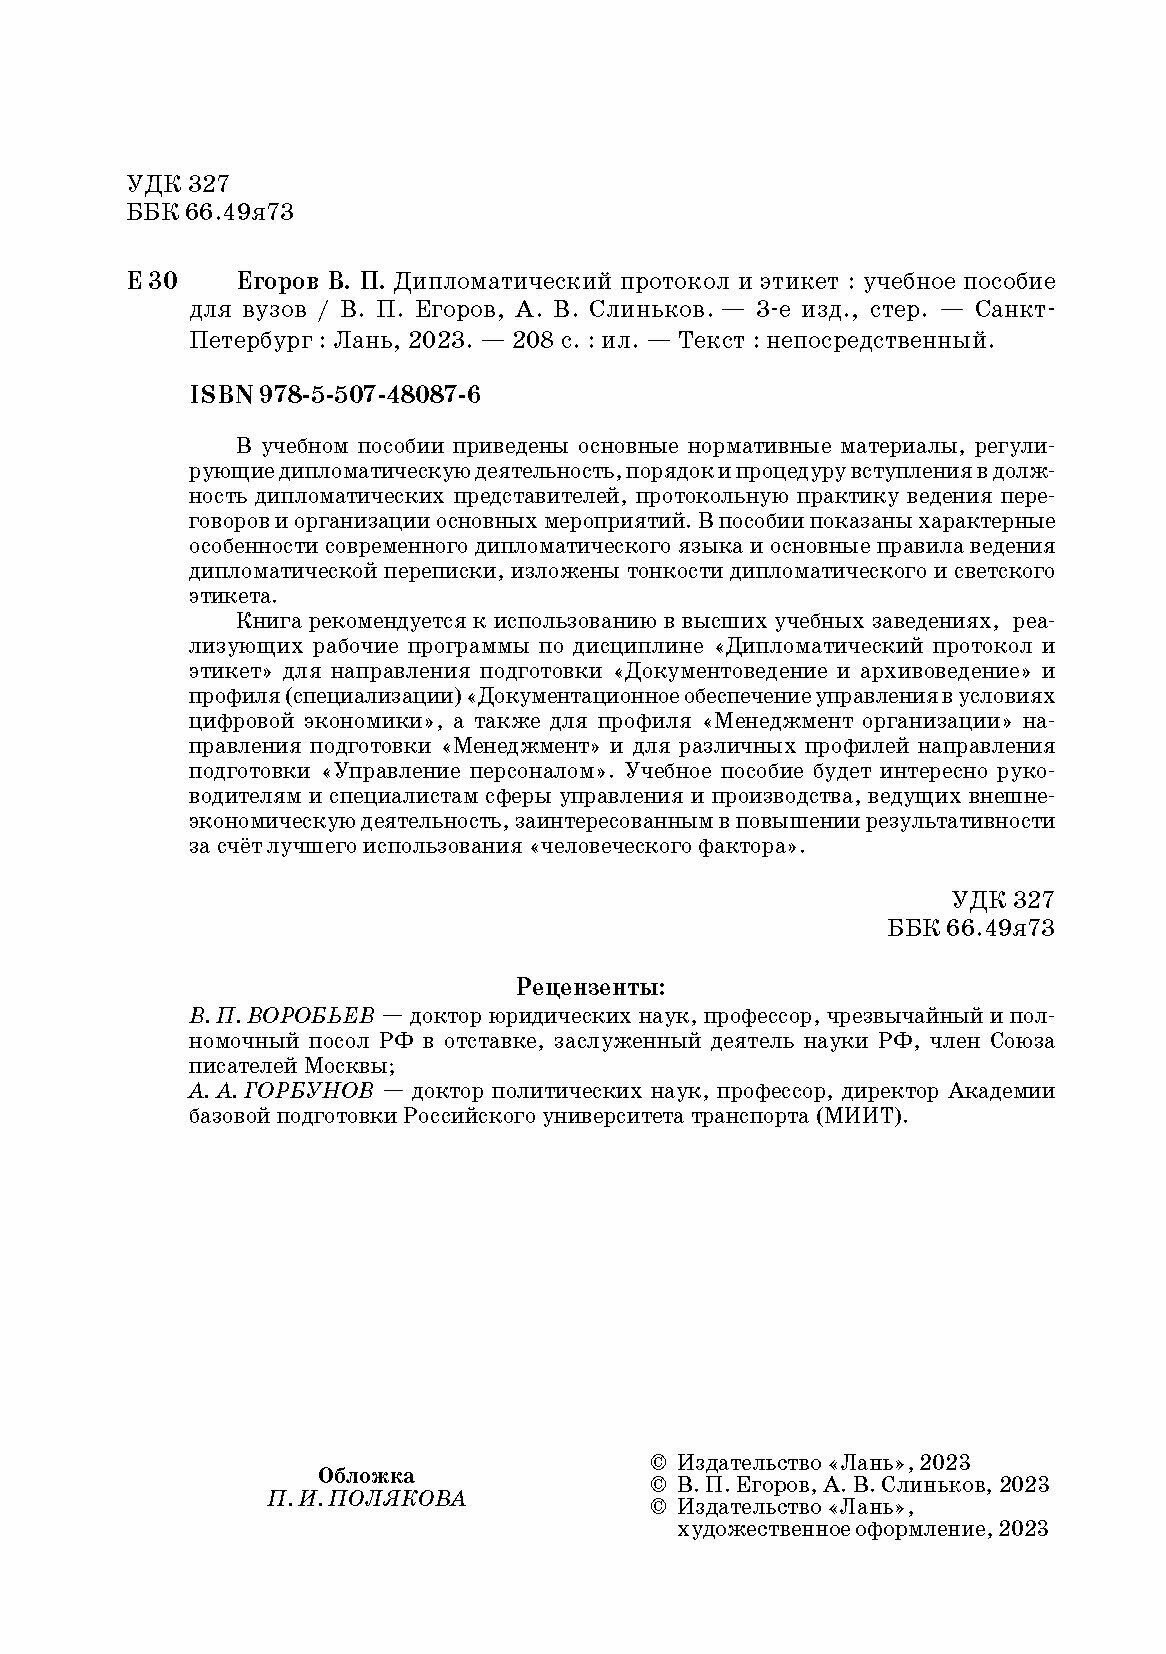 Дипломатический протокол и этикет учебное пособие для вузов - фото №6